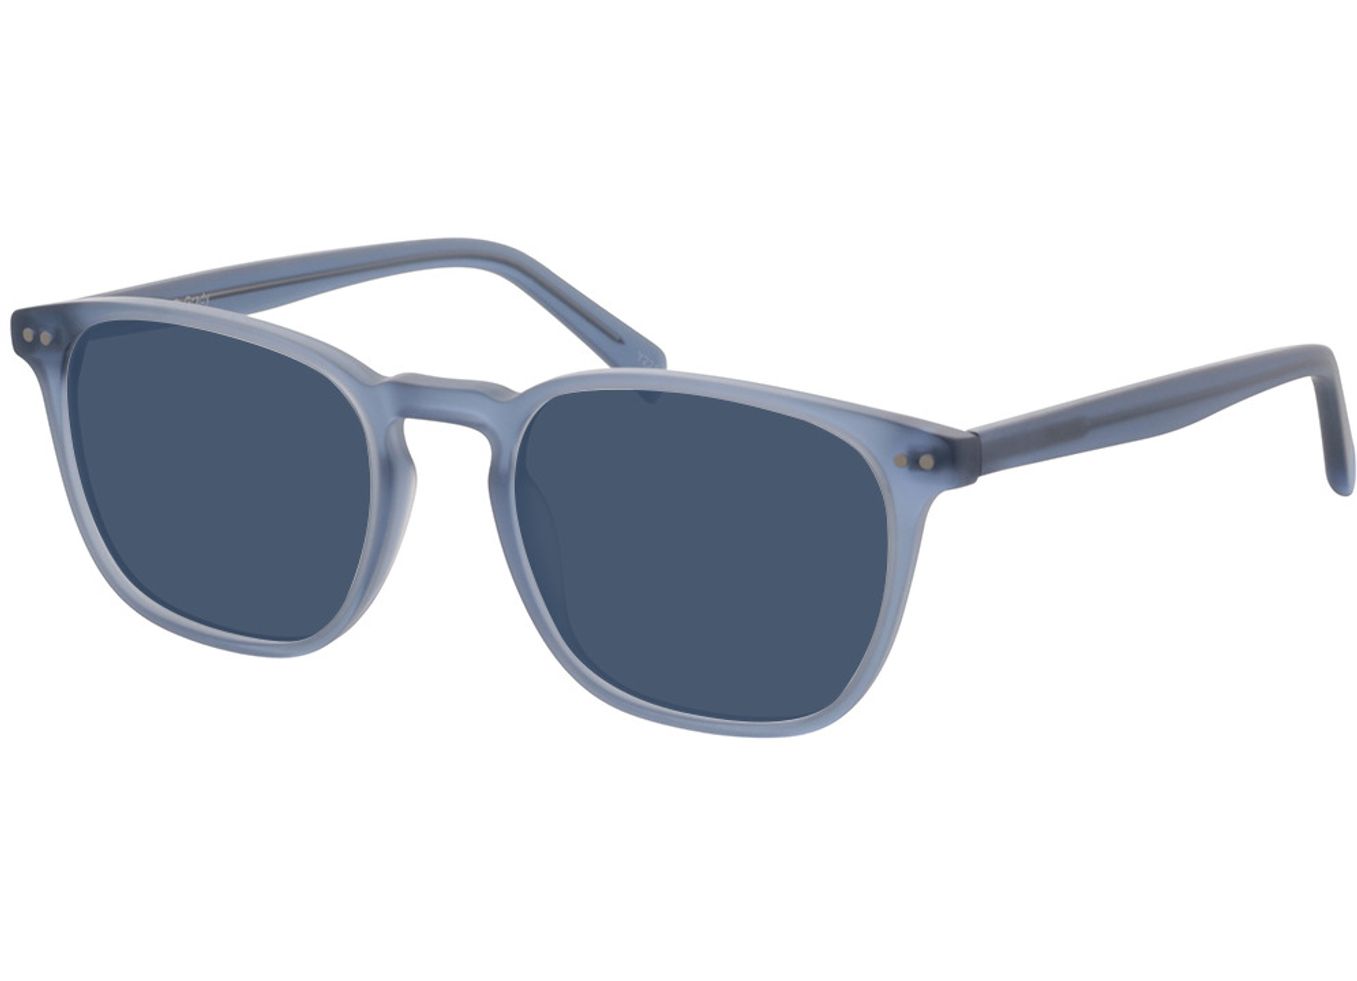 Grady - blaugrau Sonnenbrille mit Sehstärke, Vollrand, Eckig von Brille24 Collection